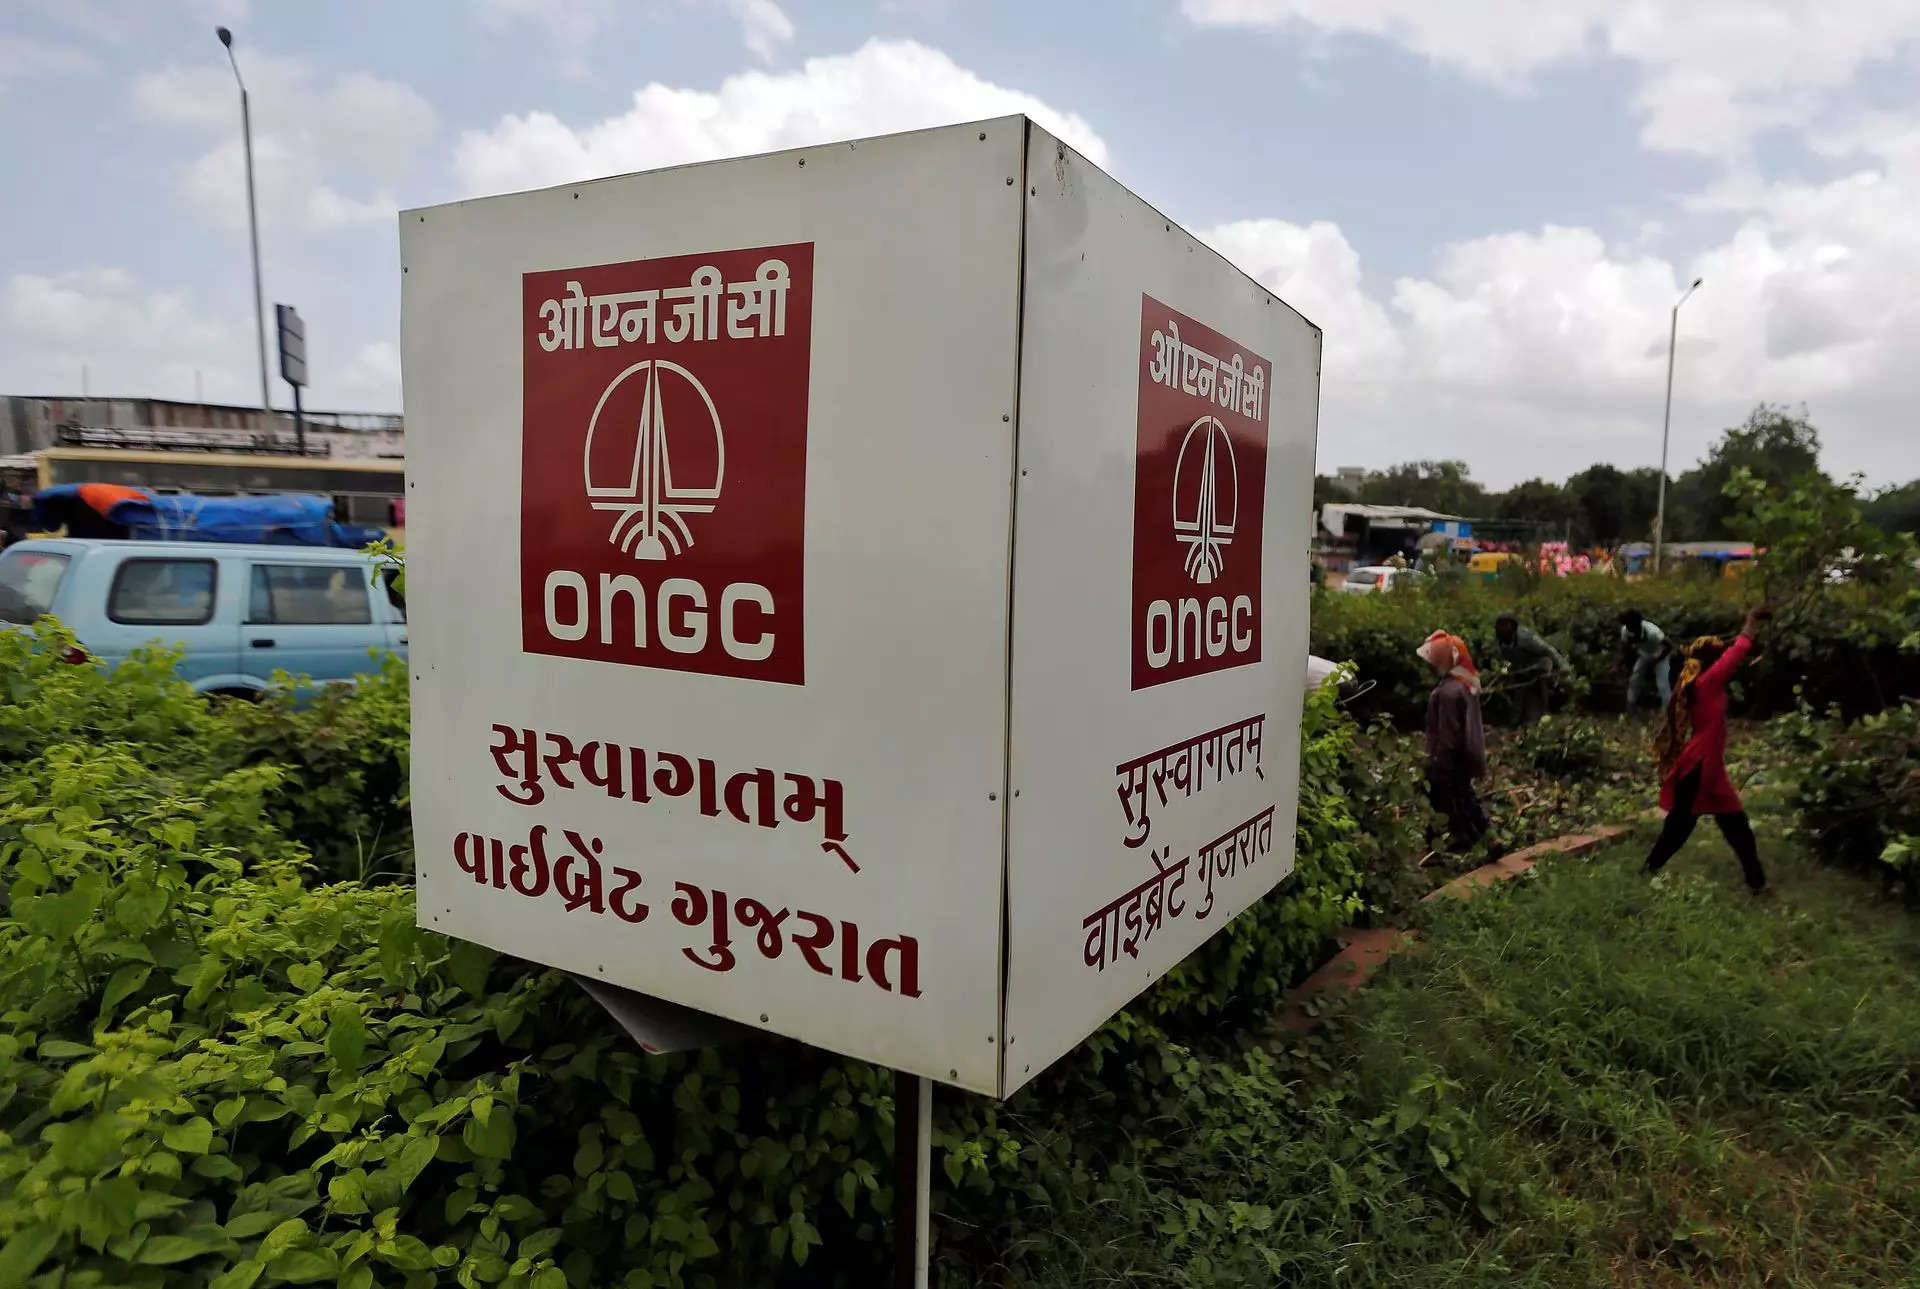 ongc makes discoveries in mahanadi basin block